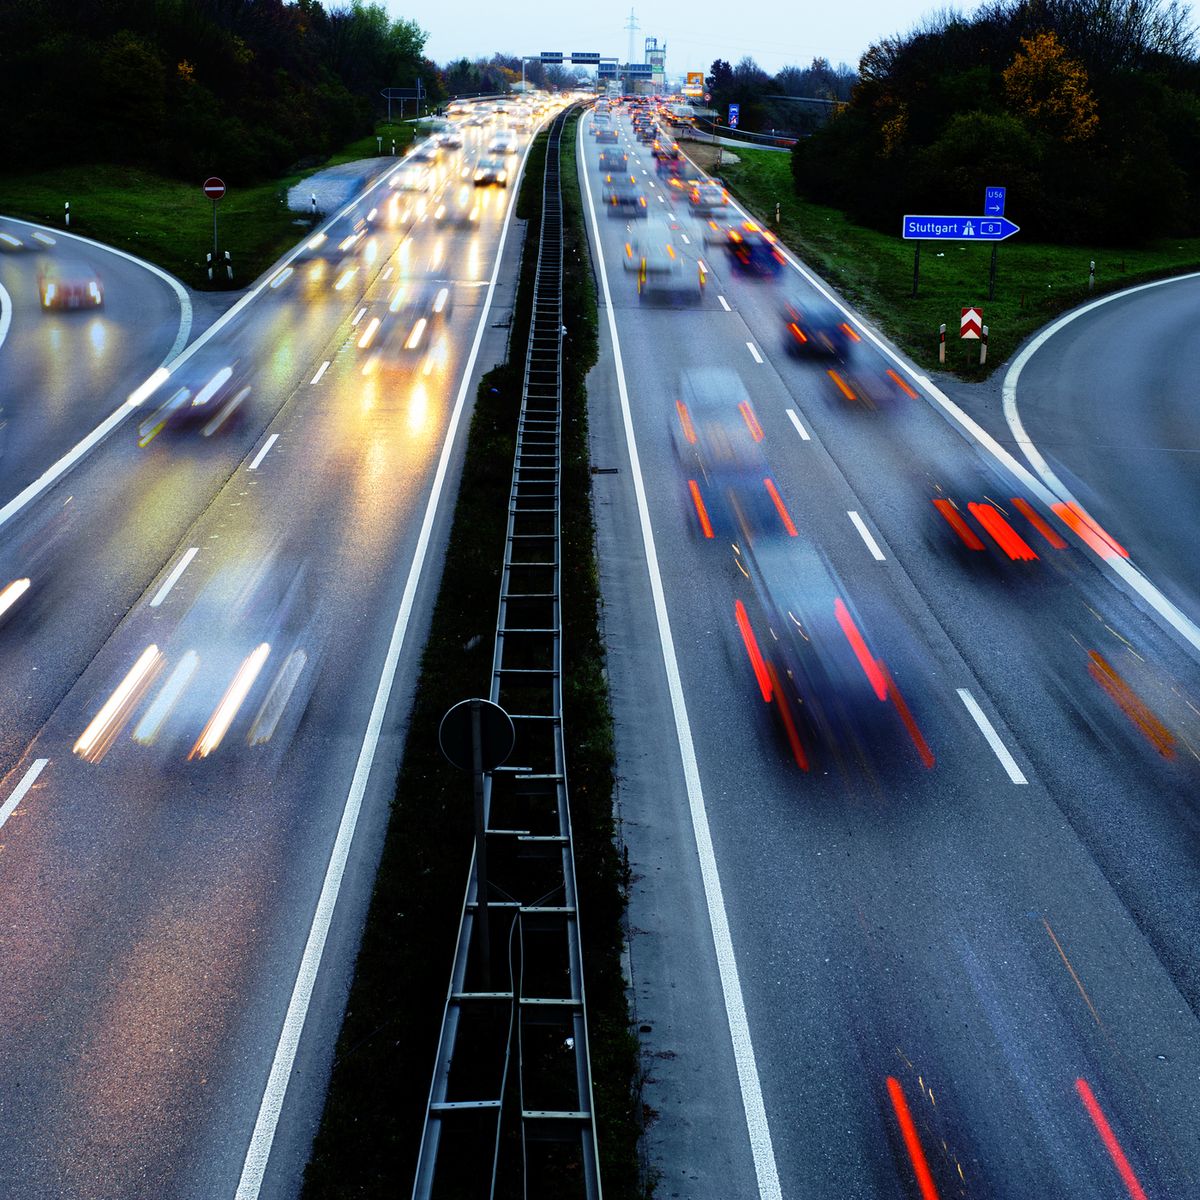 Autobahn Still Speed Limit Vote Germany